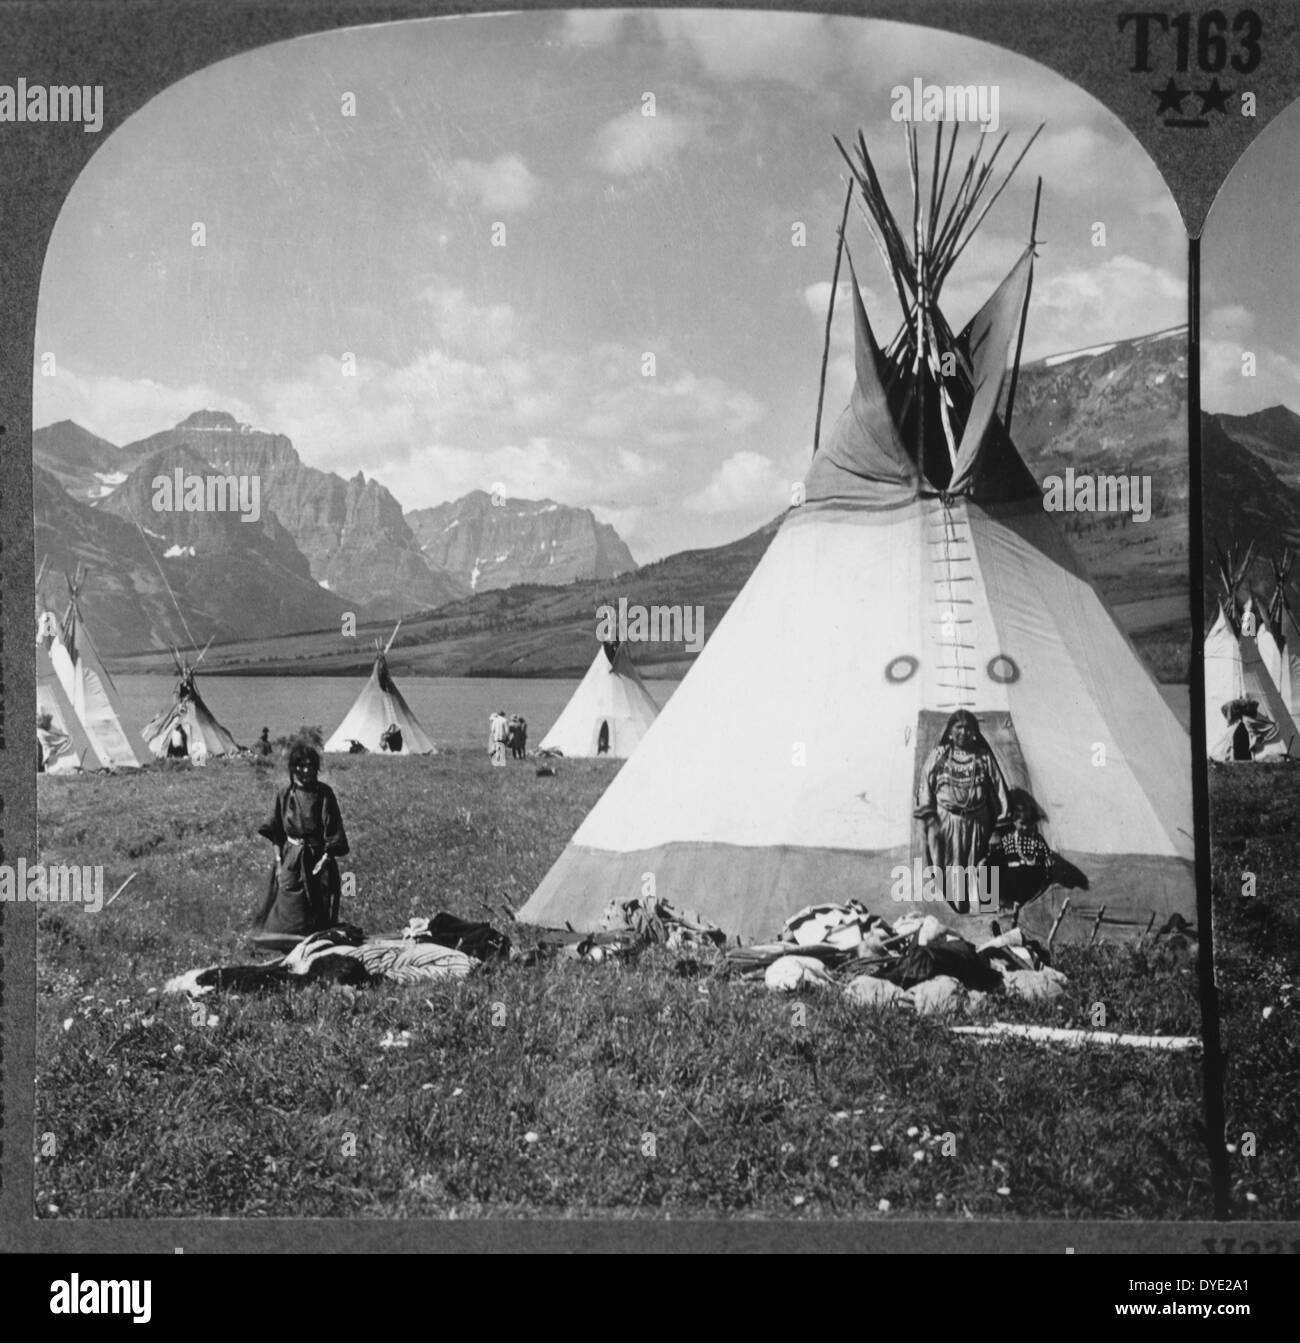 Village en tipi Blackfeet, près de St Mary's Lake, Glacier National Park, Montana, USA, vers 1900 Banque D'Images